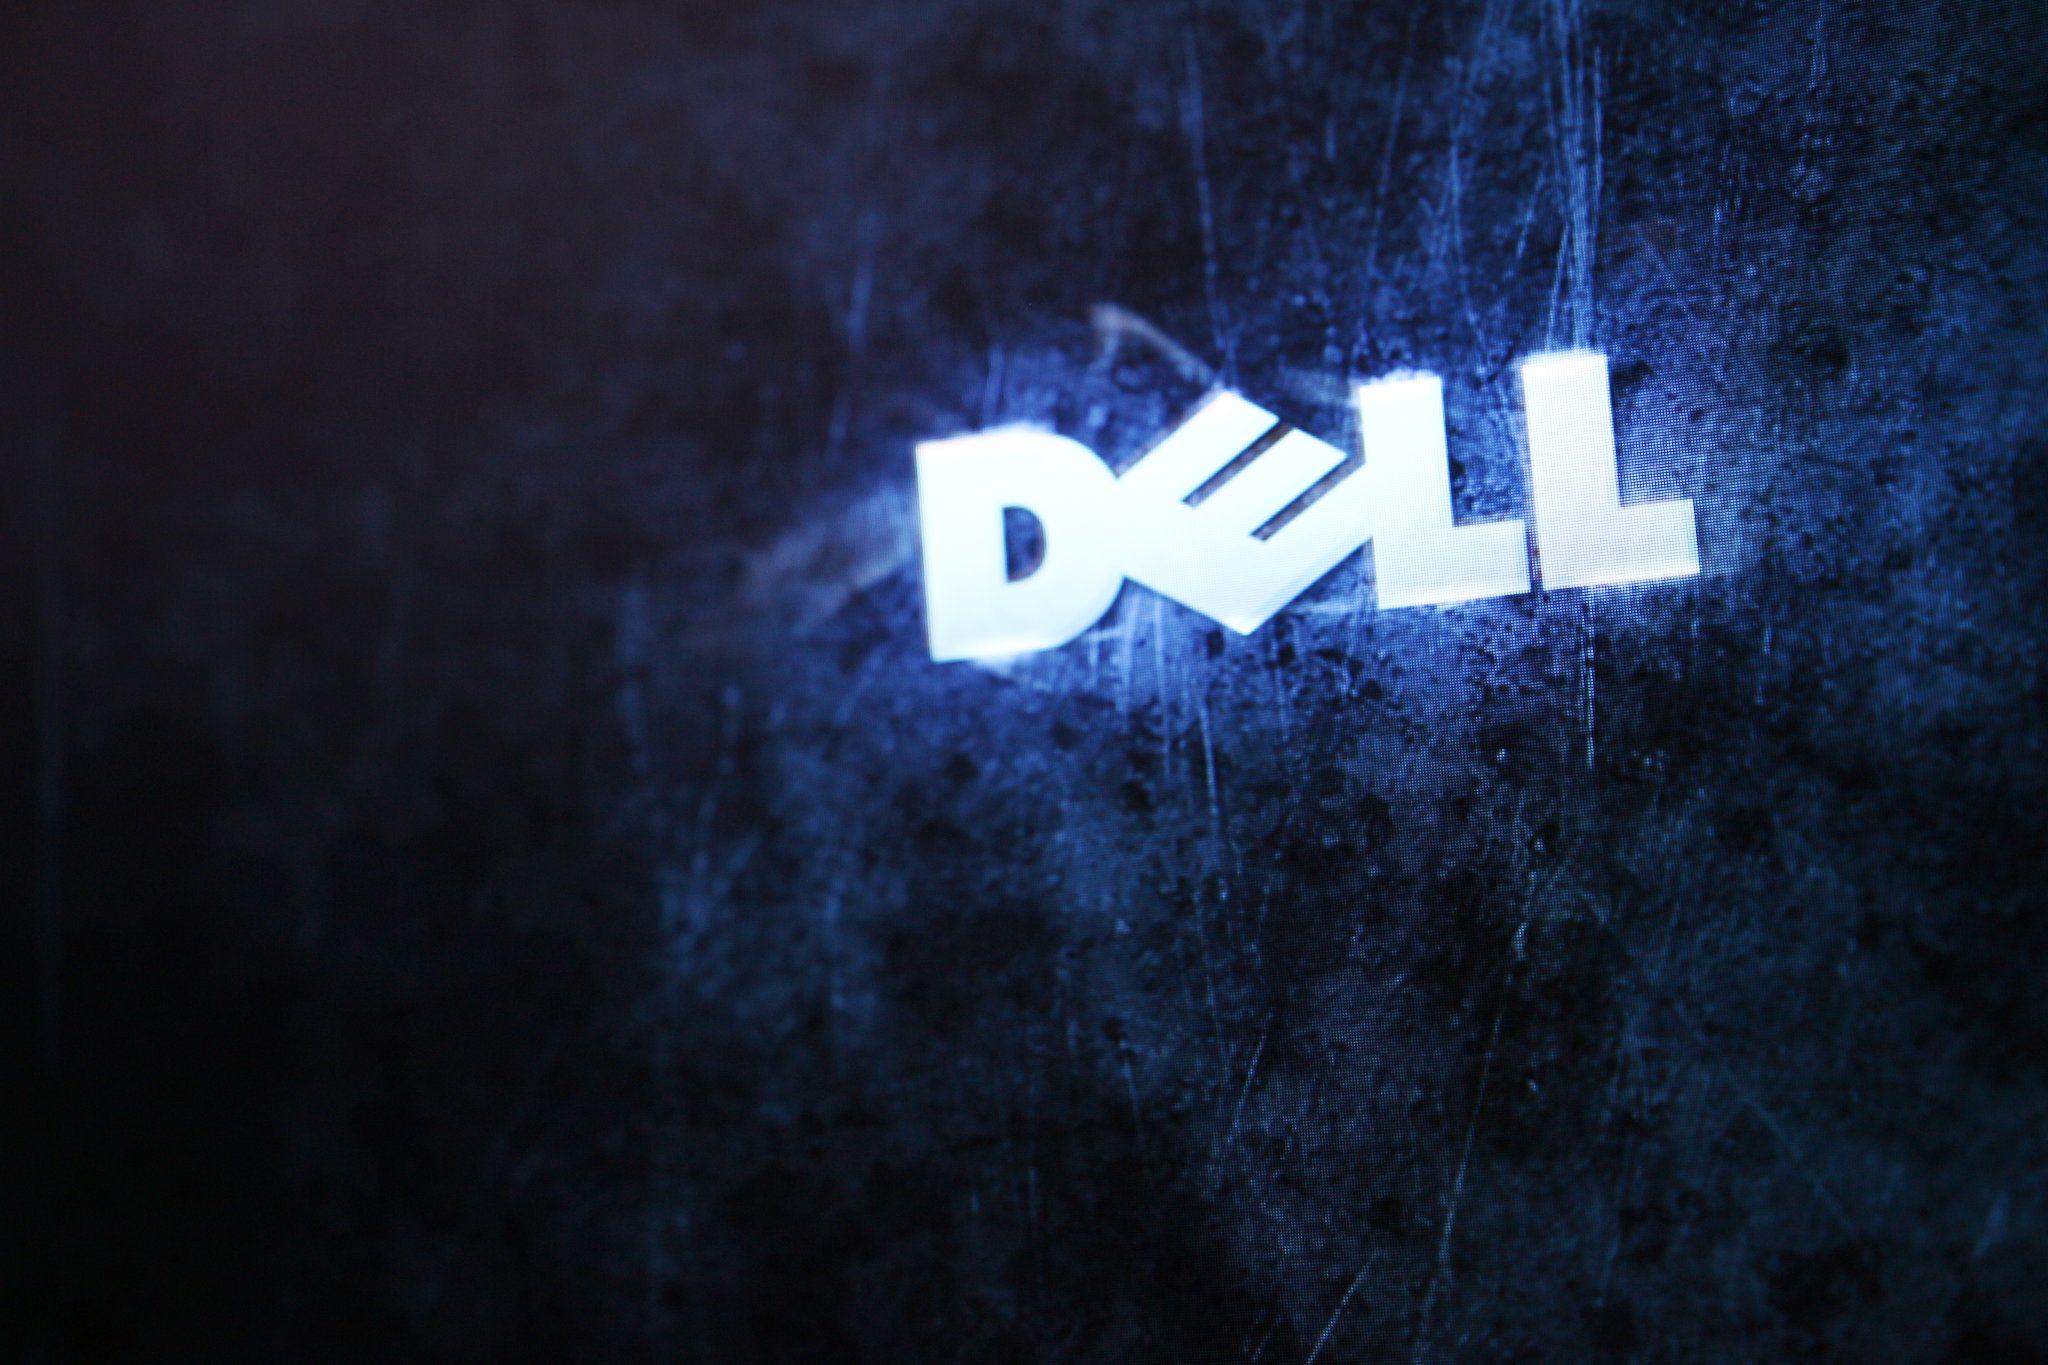 Hình nền Dell gaming với những đặc trưng riêng biệt, chắc chắn sẽ làm bạn thích thú. Chúng mang đến những hiệu ứng đẹp mắt và thiết kế độc đáo. Hãy thưởng thức những bức ảnh đẹp này để trang trí cho chiếc máy tính của bạn trông thật hoàn hảo nhé!